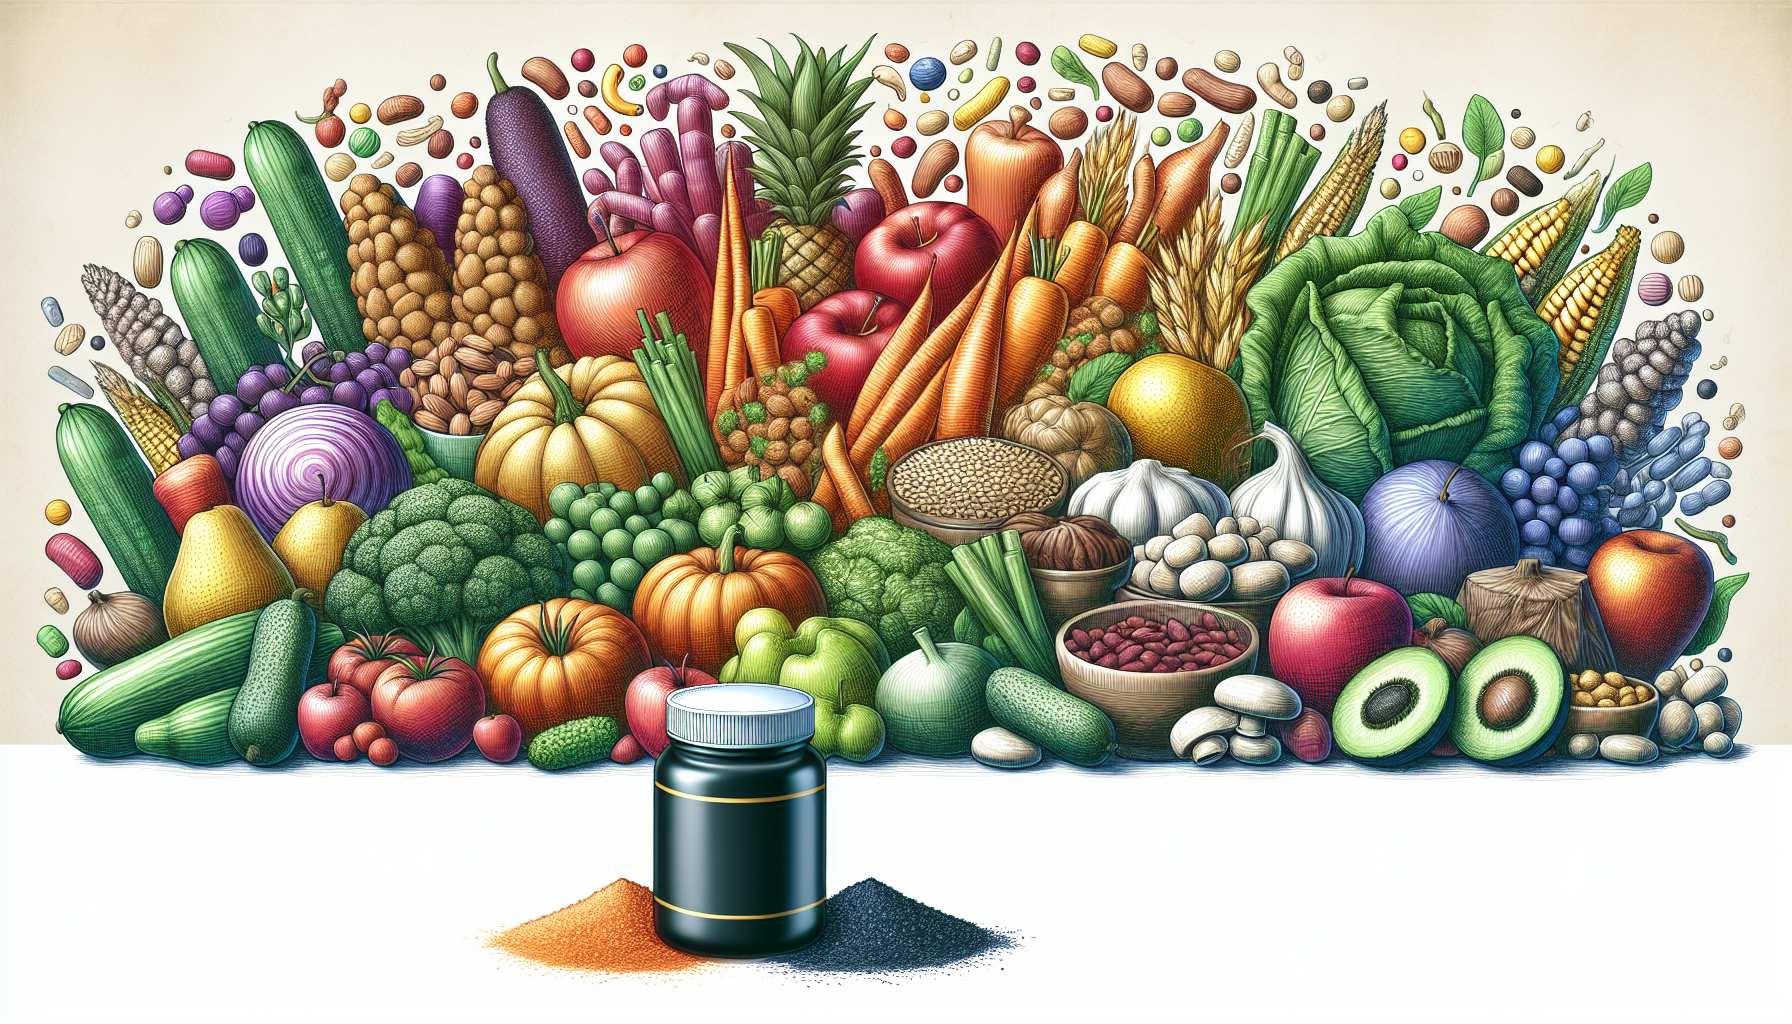 Een illustratie van een variëteit aan voedingsmiddelen, inclusief vegetarische opties